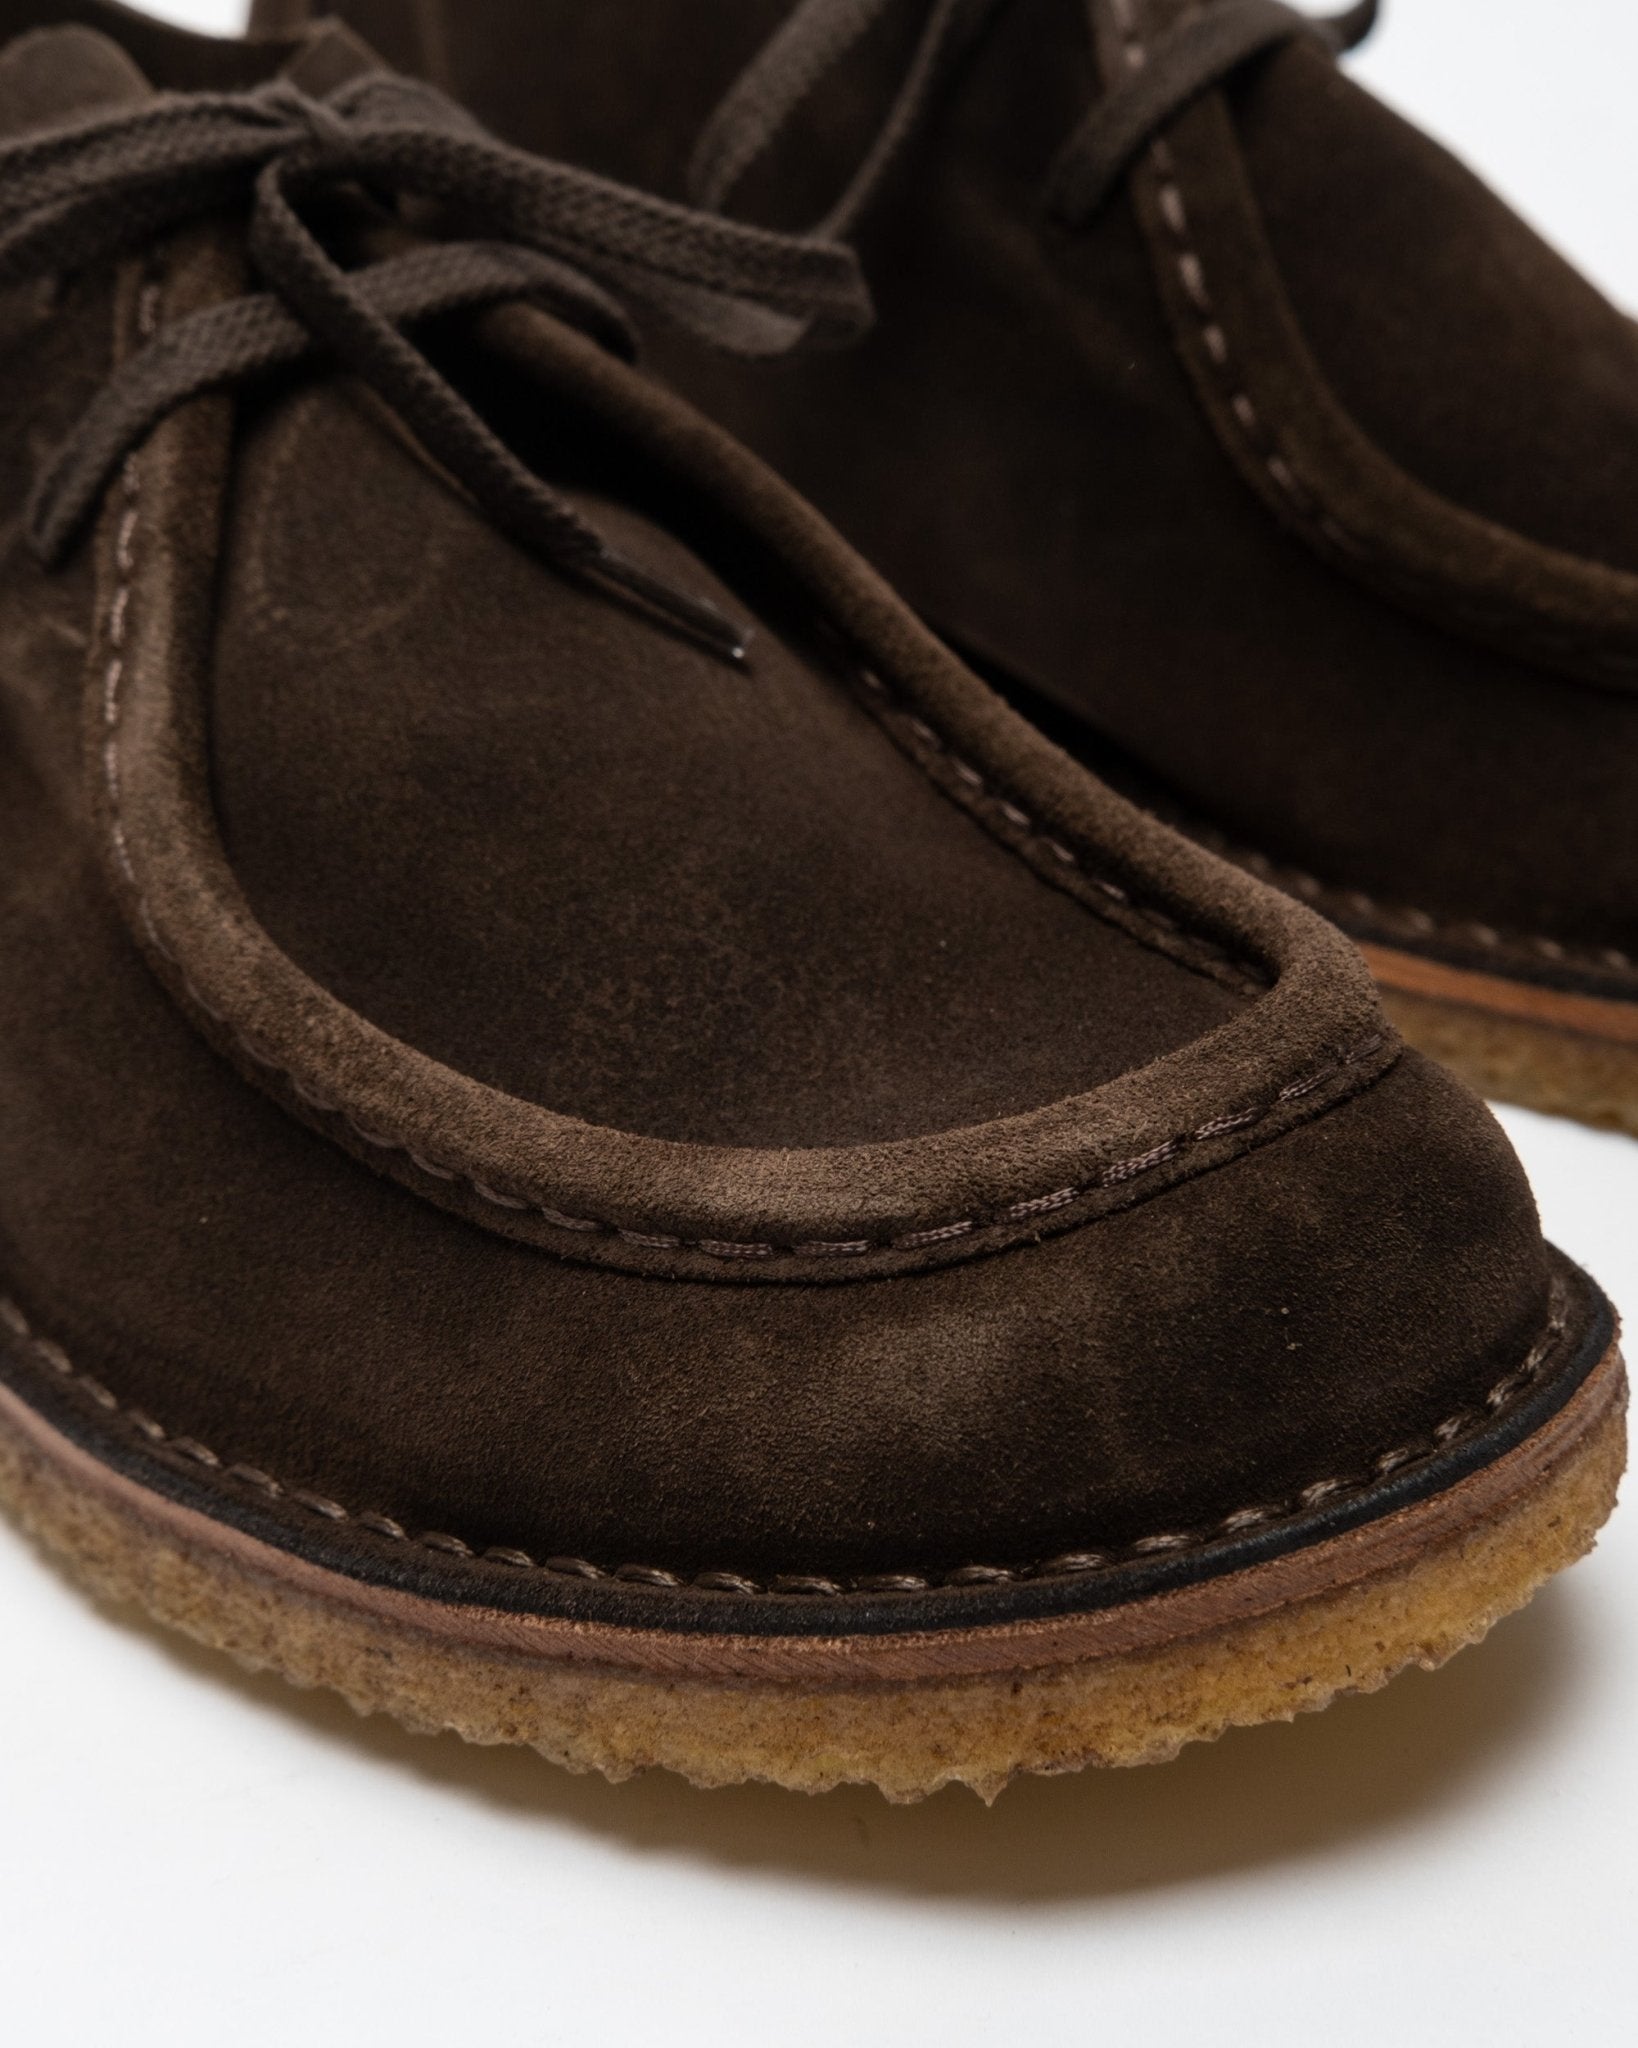 Beenflex Shoes Dark Chestnut - Meadow